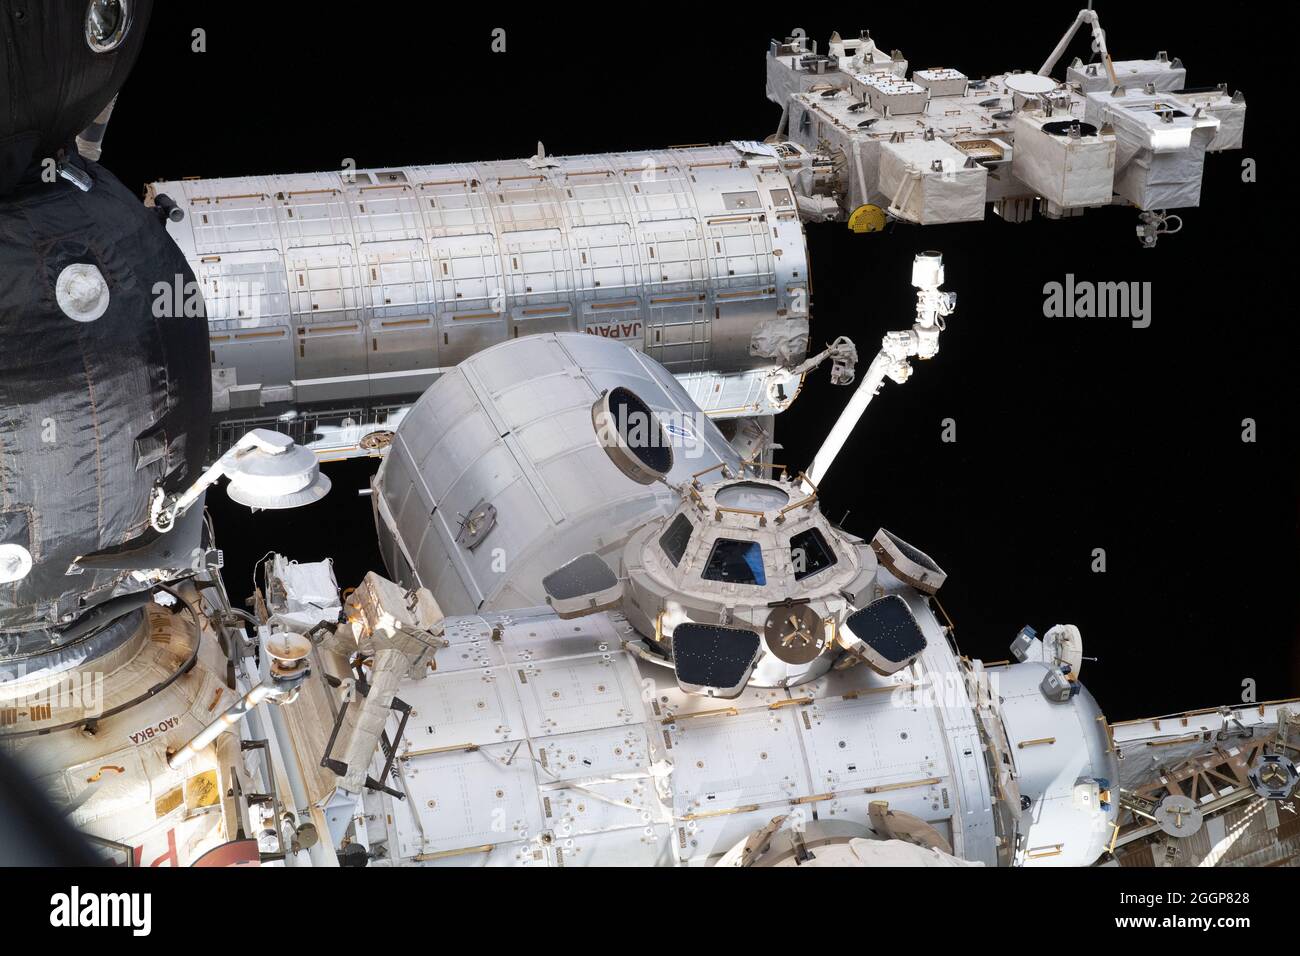 Des parties clés de la Station spatiale internationale sont visibles depuis une fenêtre sur le dernier ajout de la Russie au laboratoire en orbite, le module de laboratoire polyvalent Nauka. Banque D'Images